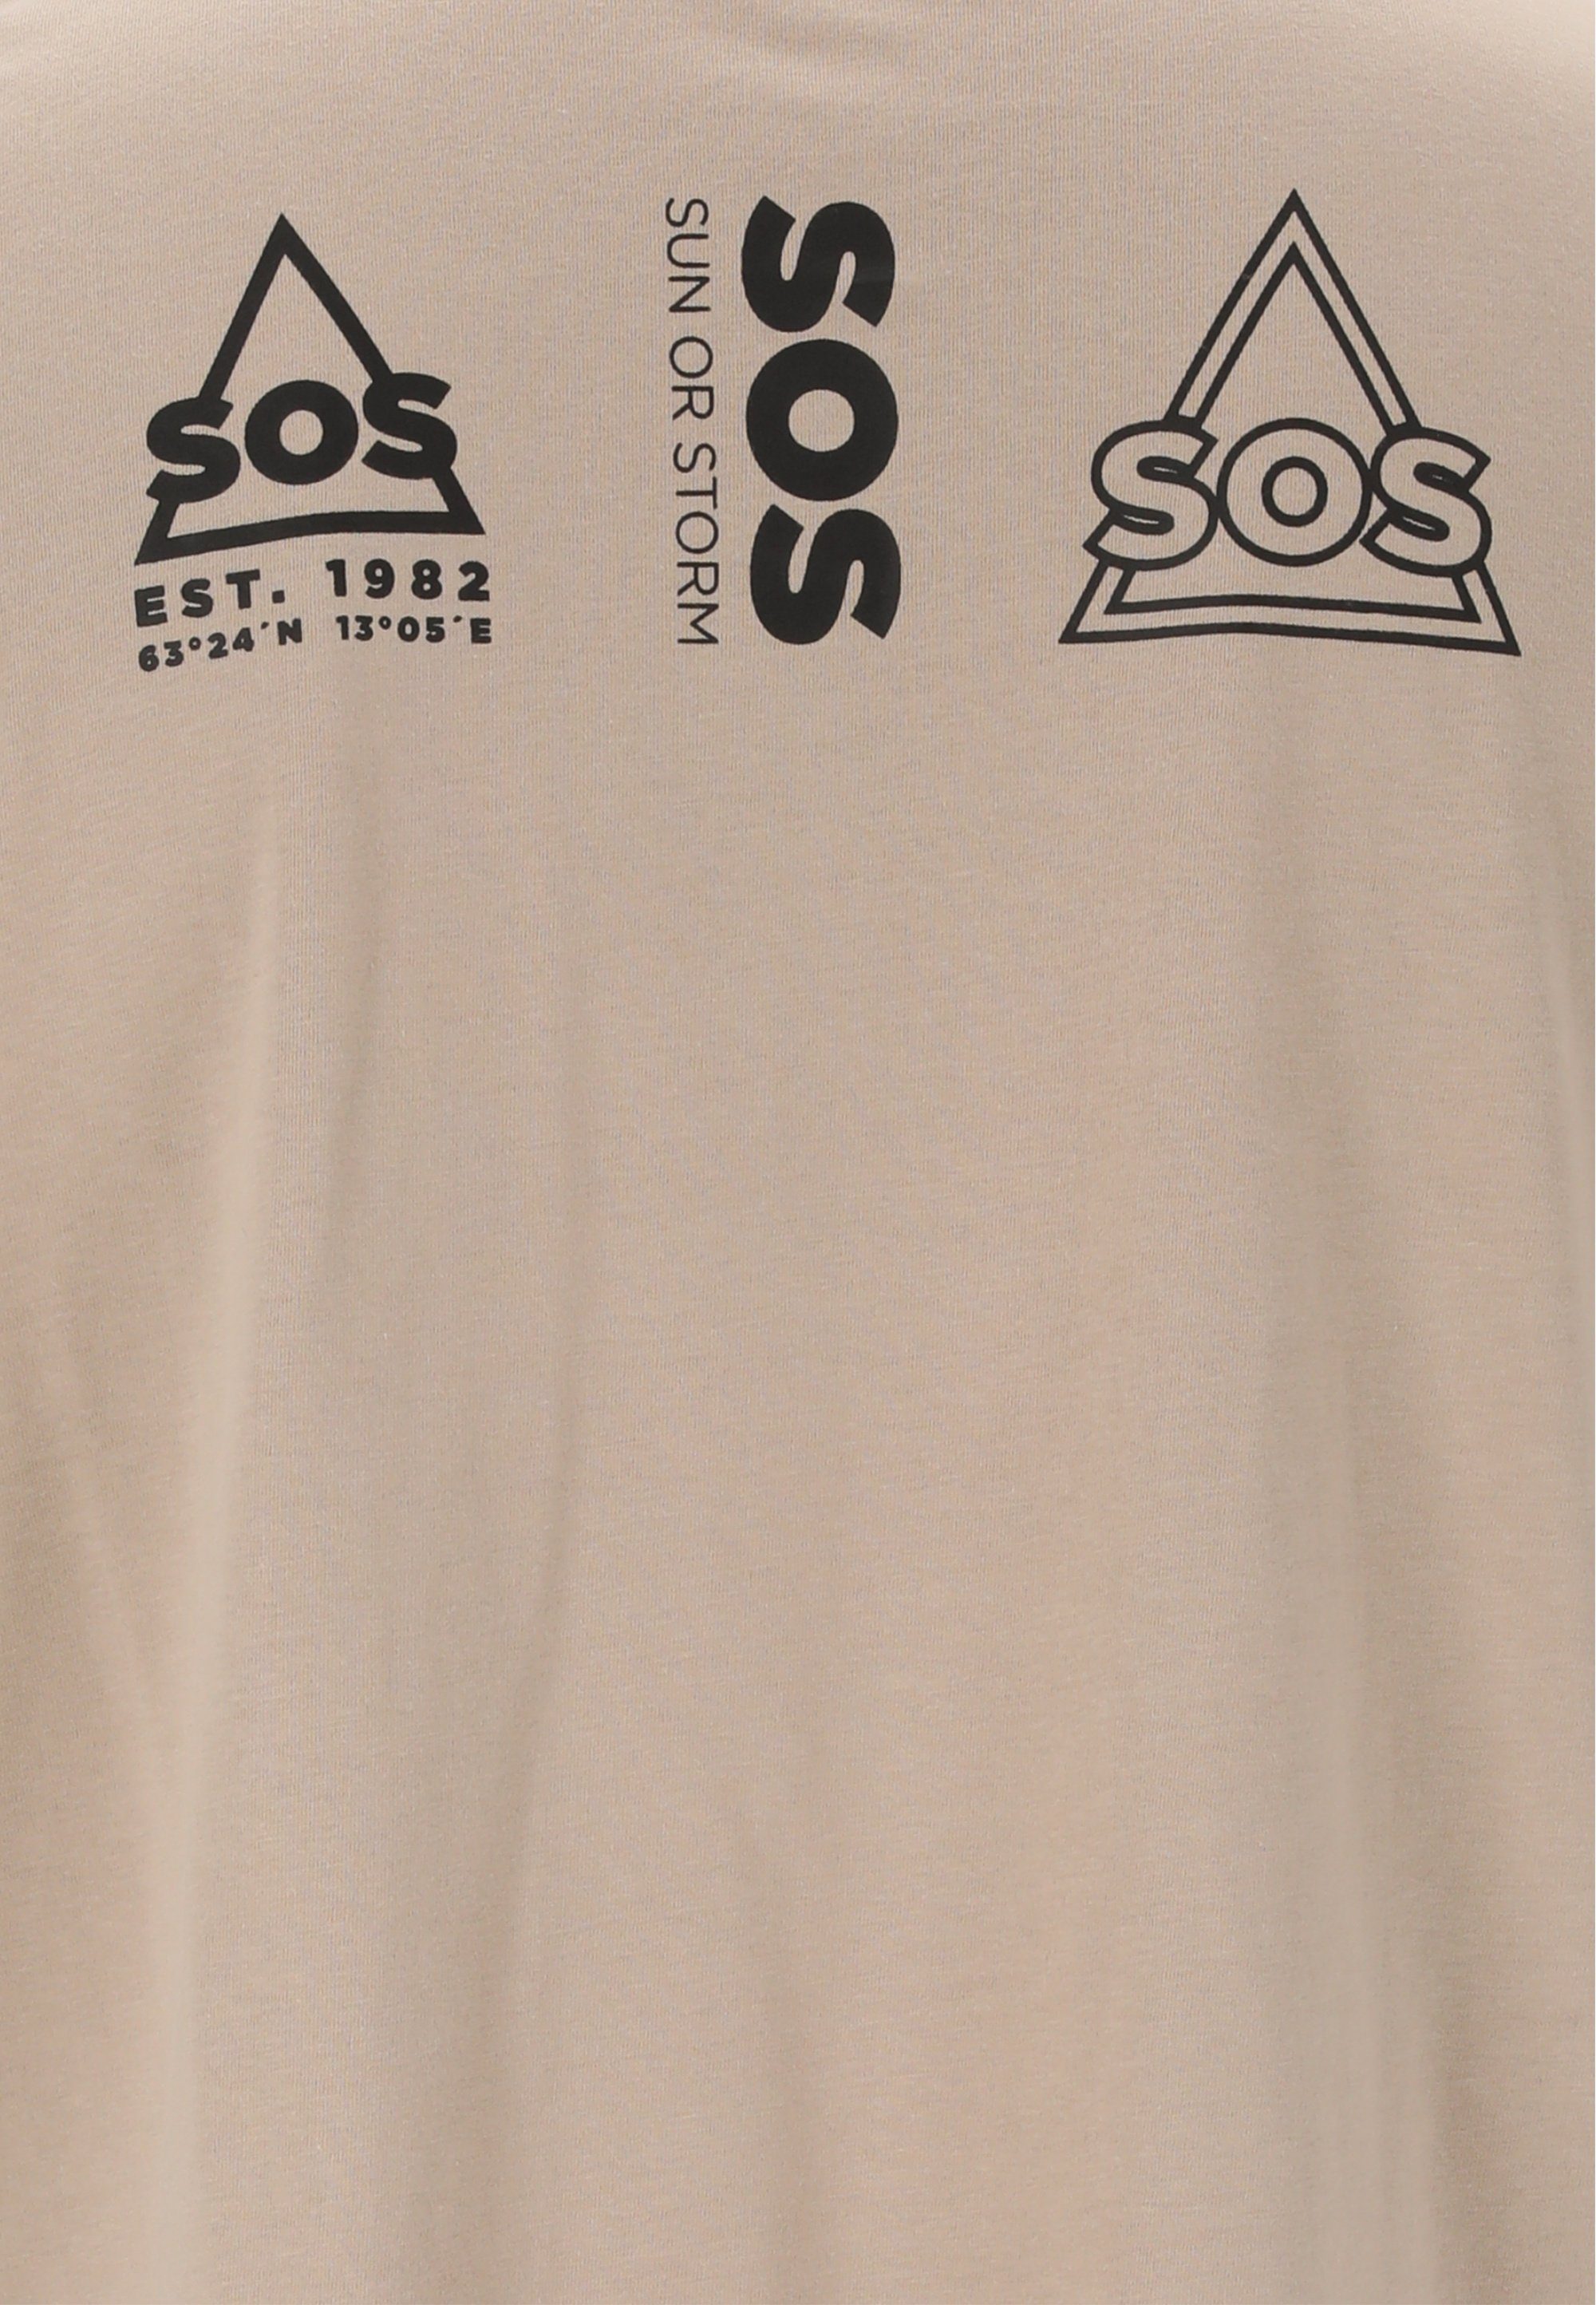 mit Dolomiti SOS taupe stylischem Funktionsshirt Logo-Design